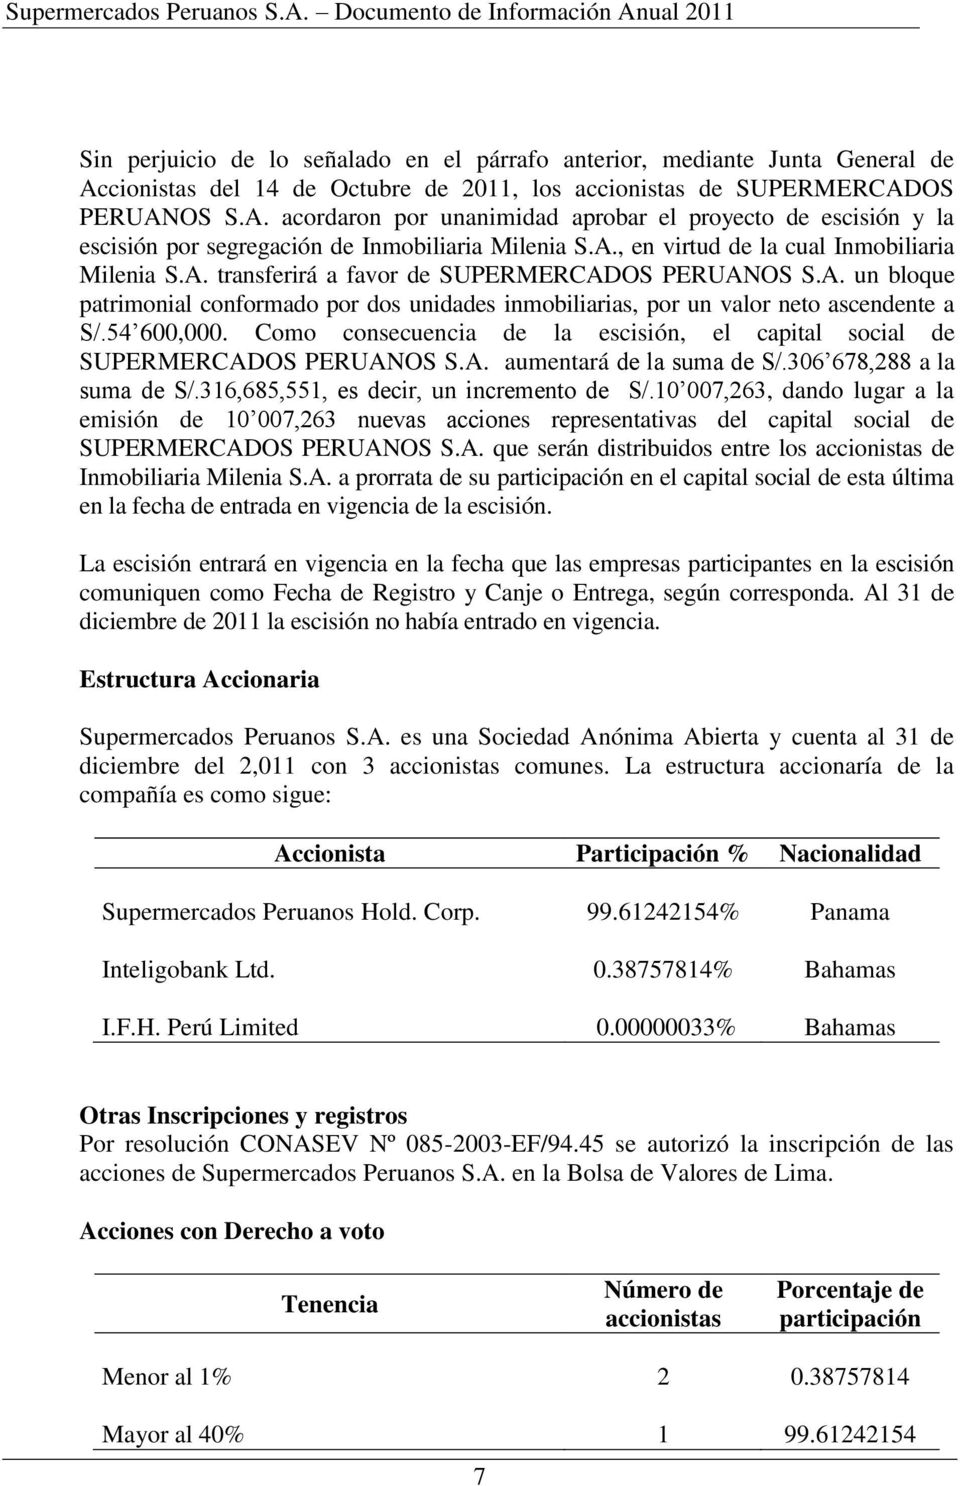 54 600,000. Como consecuencia de la escisión, el capital social de SUPERMERCADOS PERUANOS S.A. aumentará de la suma de S/.306 678,288 a la suma de S/.316,685,551, es decir, un incremento de S/.